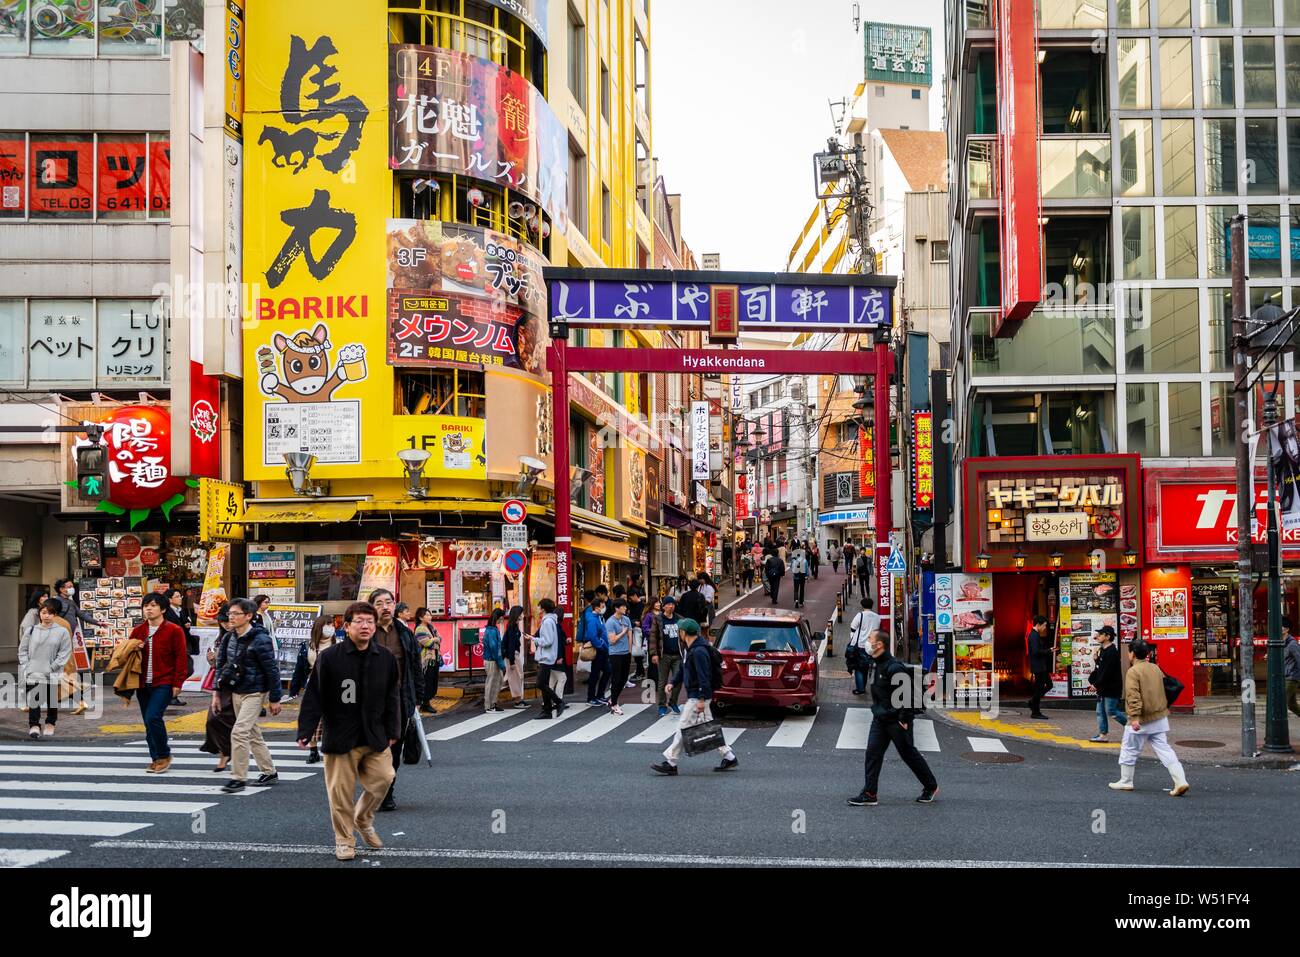 Street with many shopping centers and shops, Shibuya, Udagawacho, Tokyo, Japan Stock Photo